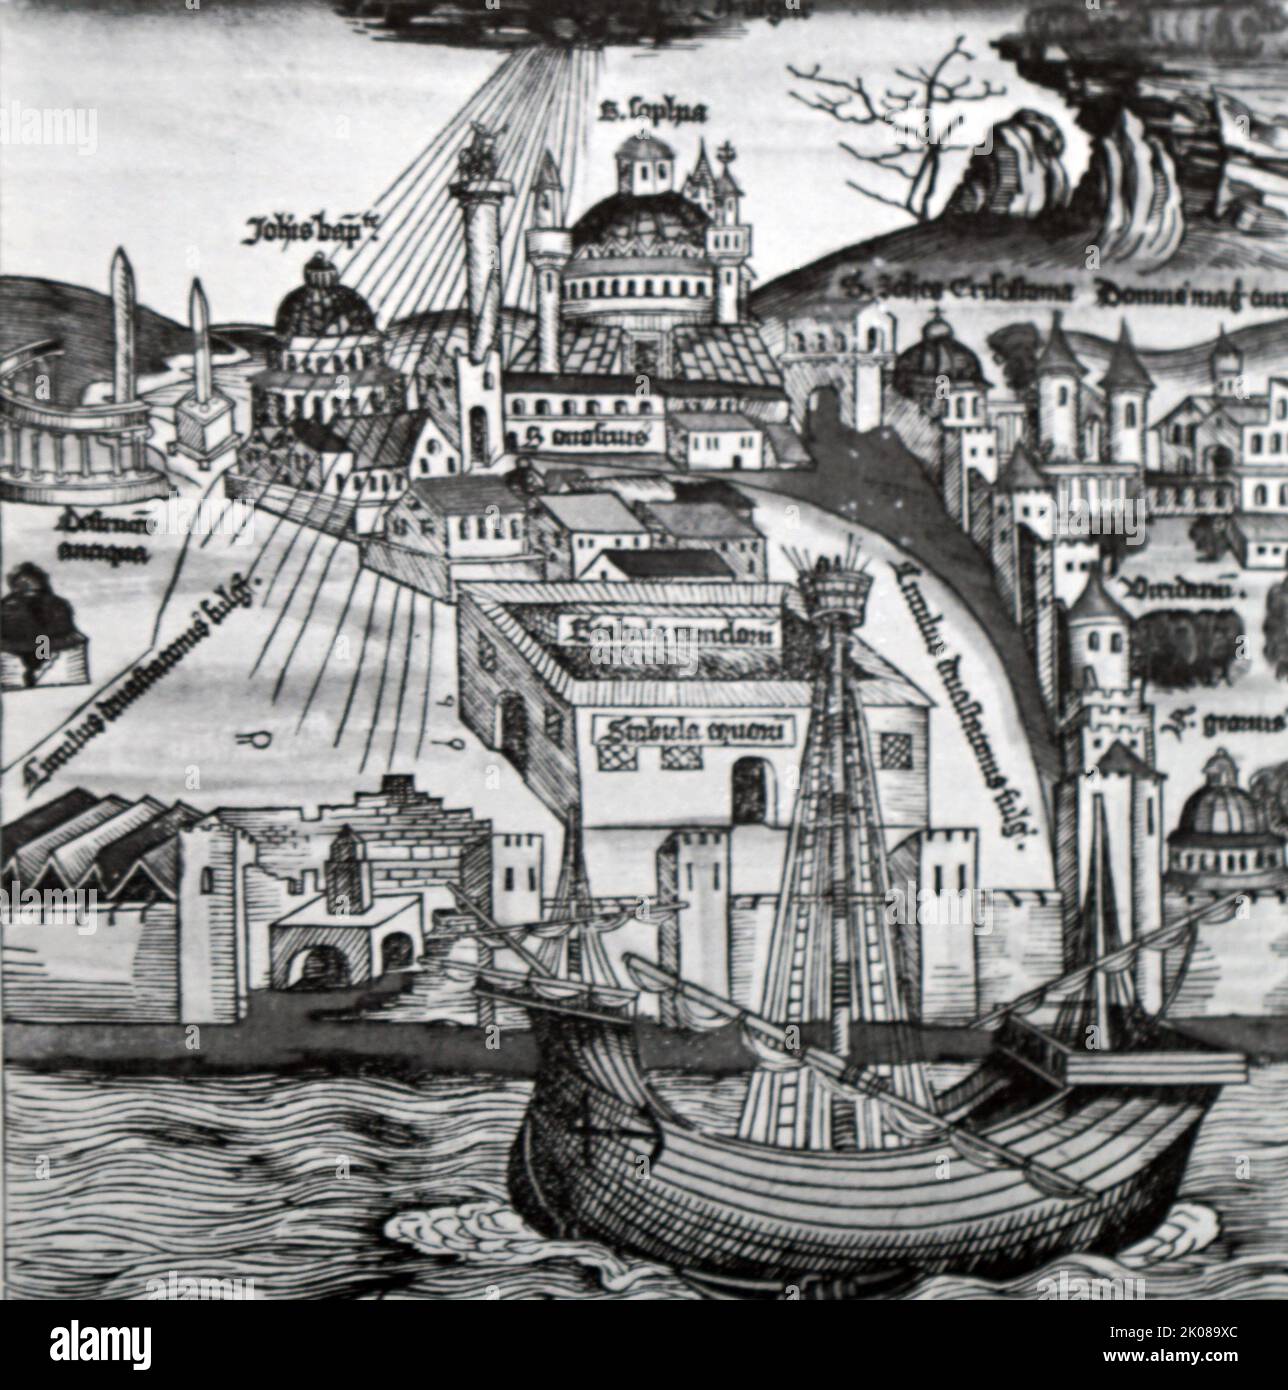 Illustrazione di Costantinopoli, che era la capitale dell'Impero Romano, e più tardi, l'Impero Romano d'Oriente (330-1204 e 1261-1453), l'Impero Latino (1204-1261) e l'Impero Ottomano (1453-1922). La capitale si trasferì ad Ankara dopo la guerra di indipendenza turca Foto Stock